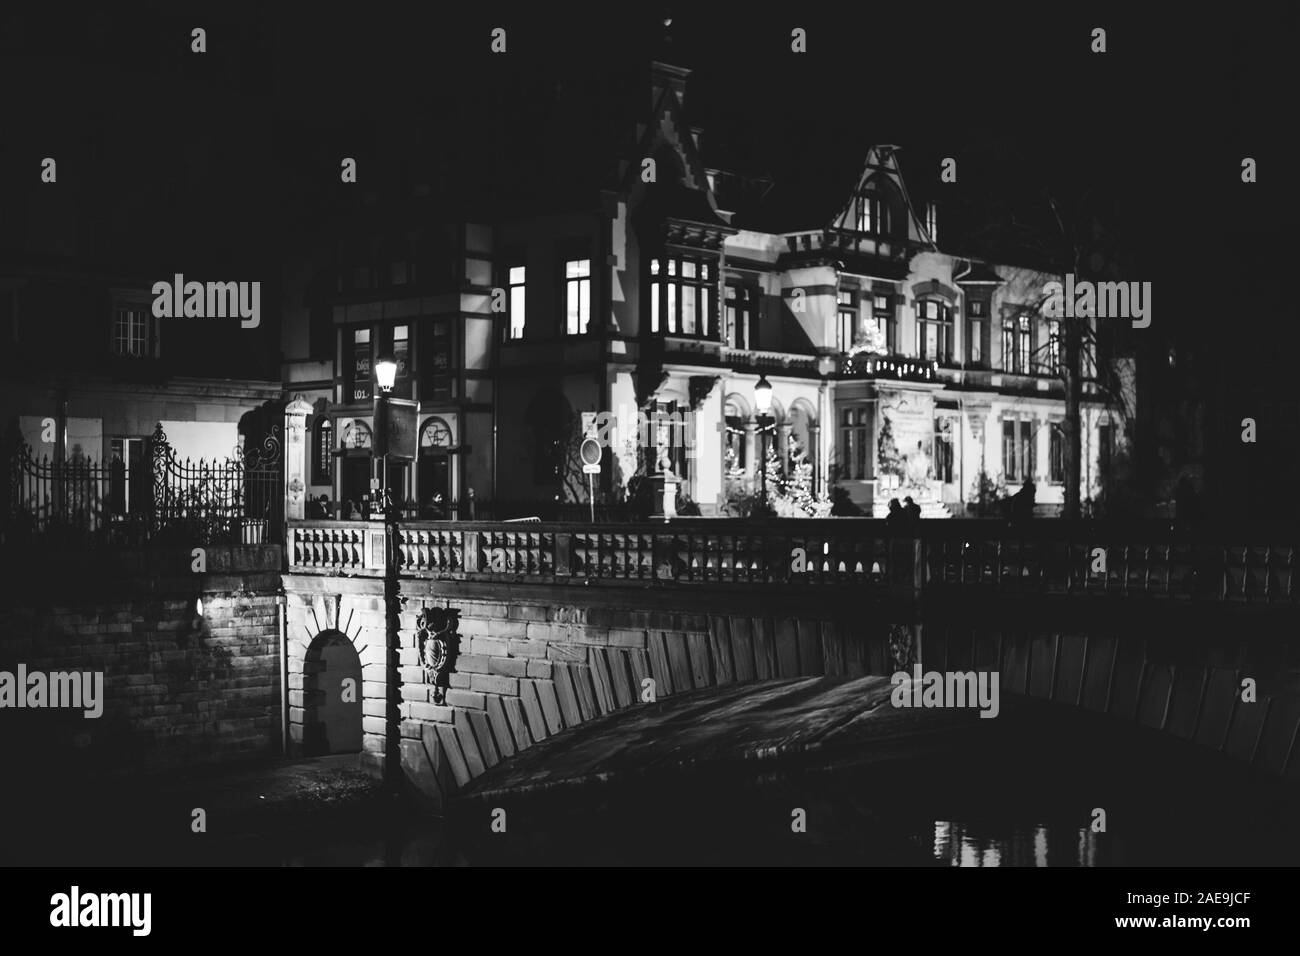 Strasburgo, Francia - Dic 20, 2016: illuminato dalla luce di strada Pont de la Poste nel centro di Strasburgo con Radio Francia alsaziano legno costruzione casa sullo sfondo - Immagine in bianco e nero Foto Stock